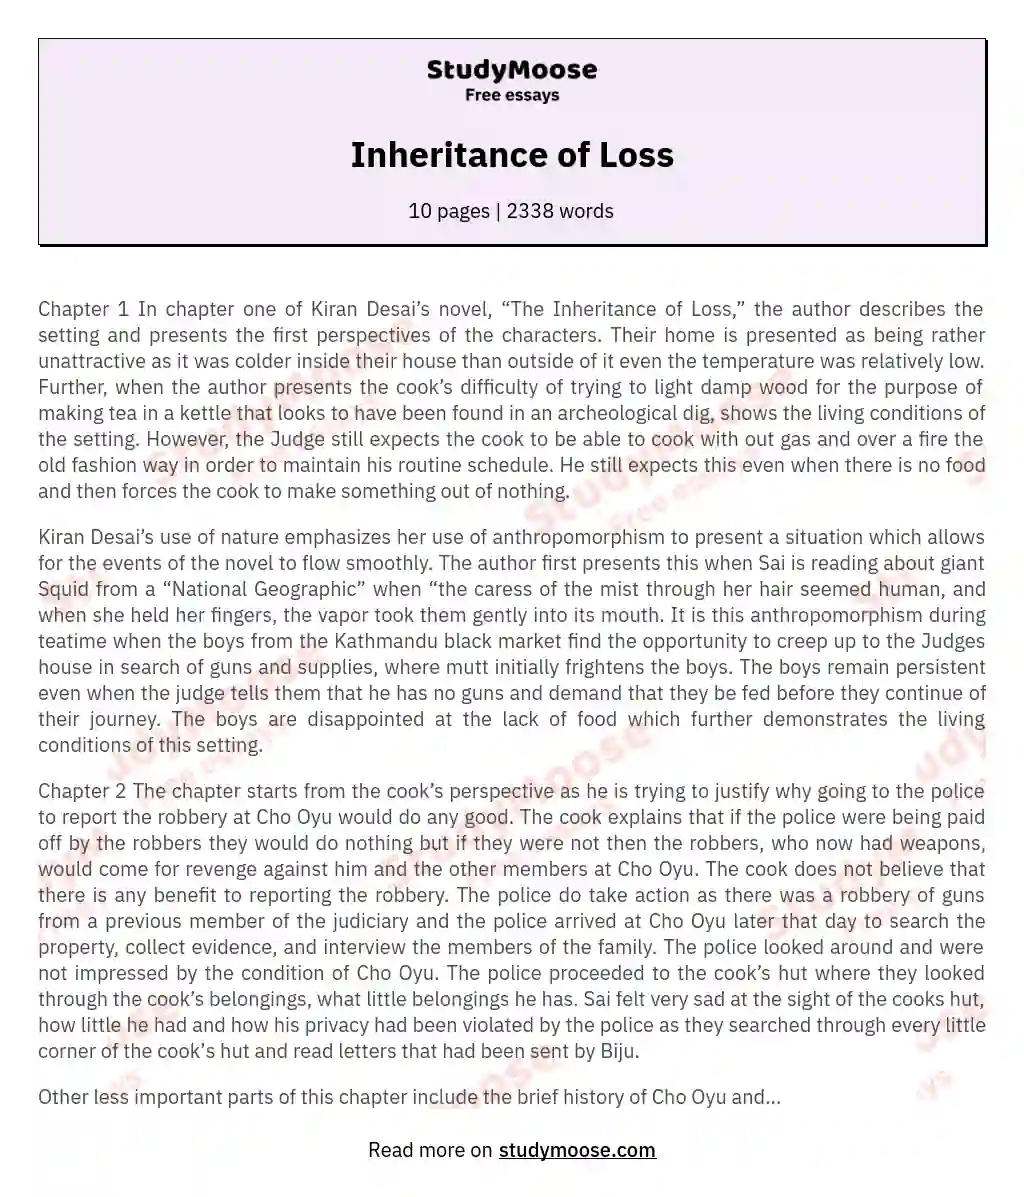 Inheritance of Loss essay